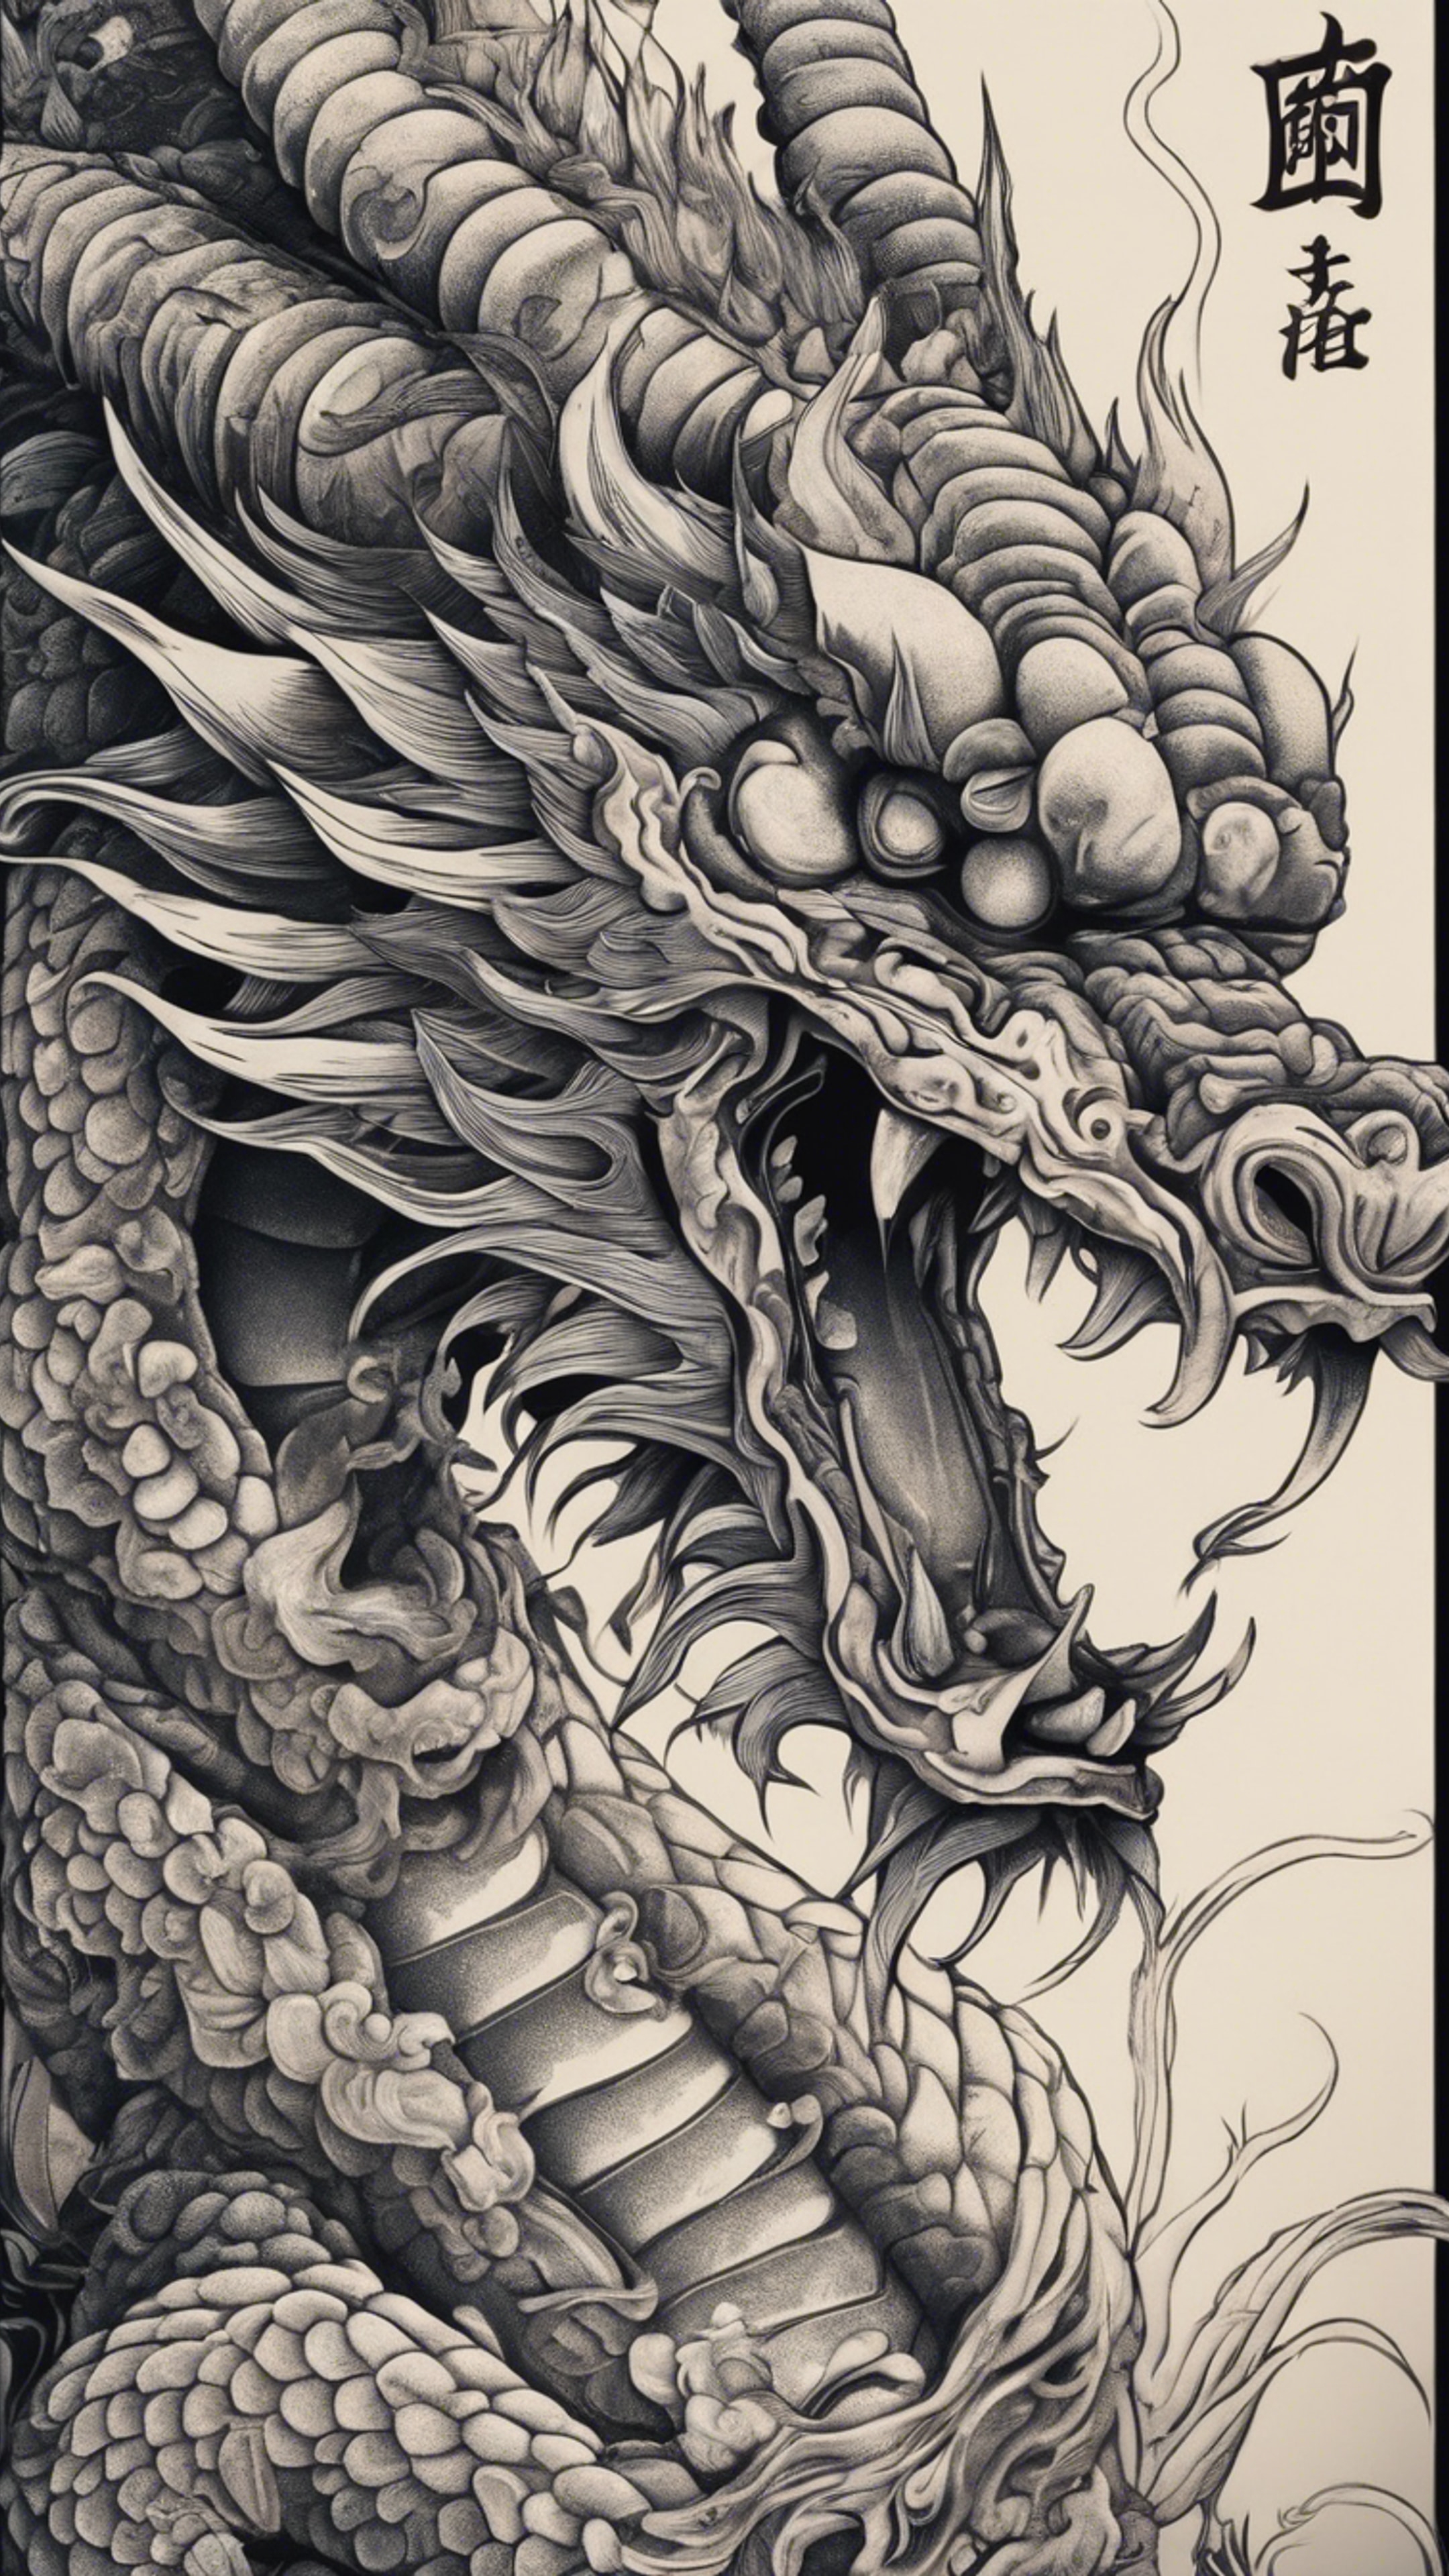 A Japanese dragon tattoo design with intricate details. Tapeta[fa4ff1f2e6c24a2f94e4]